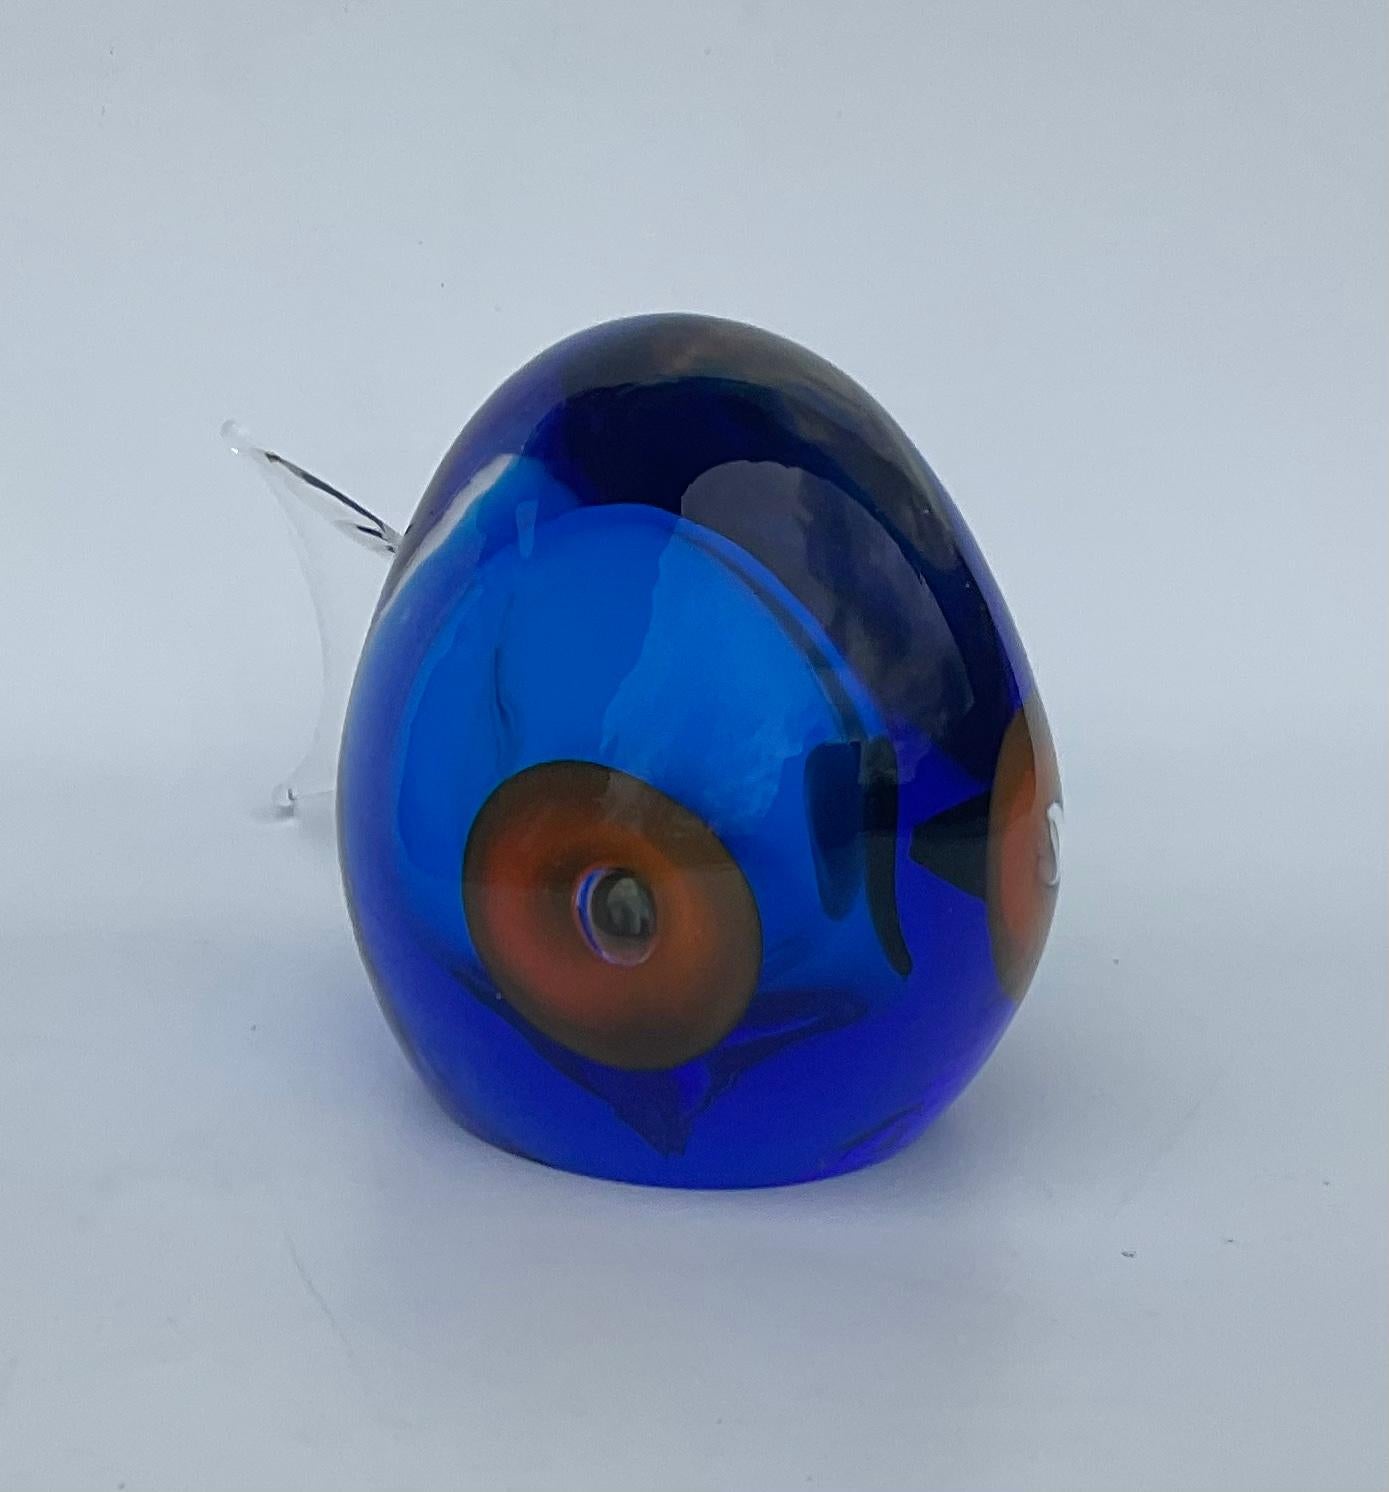 Antonio da Ros Cenedese Murano Glass Sommerso Fish Sculpture in Vibrant Blue  In Good Condition For Sale In Ann Arbor, MI